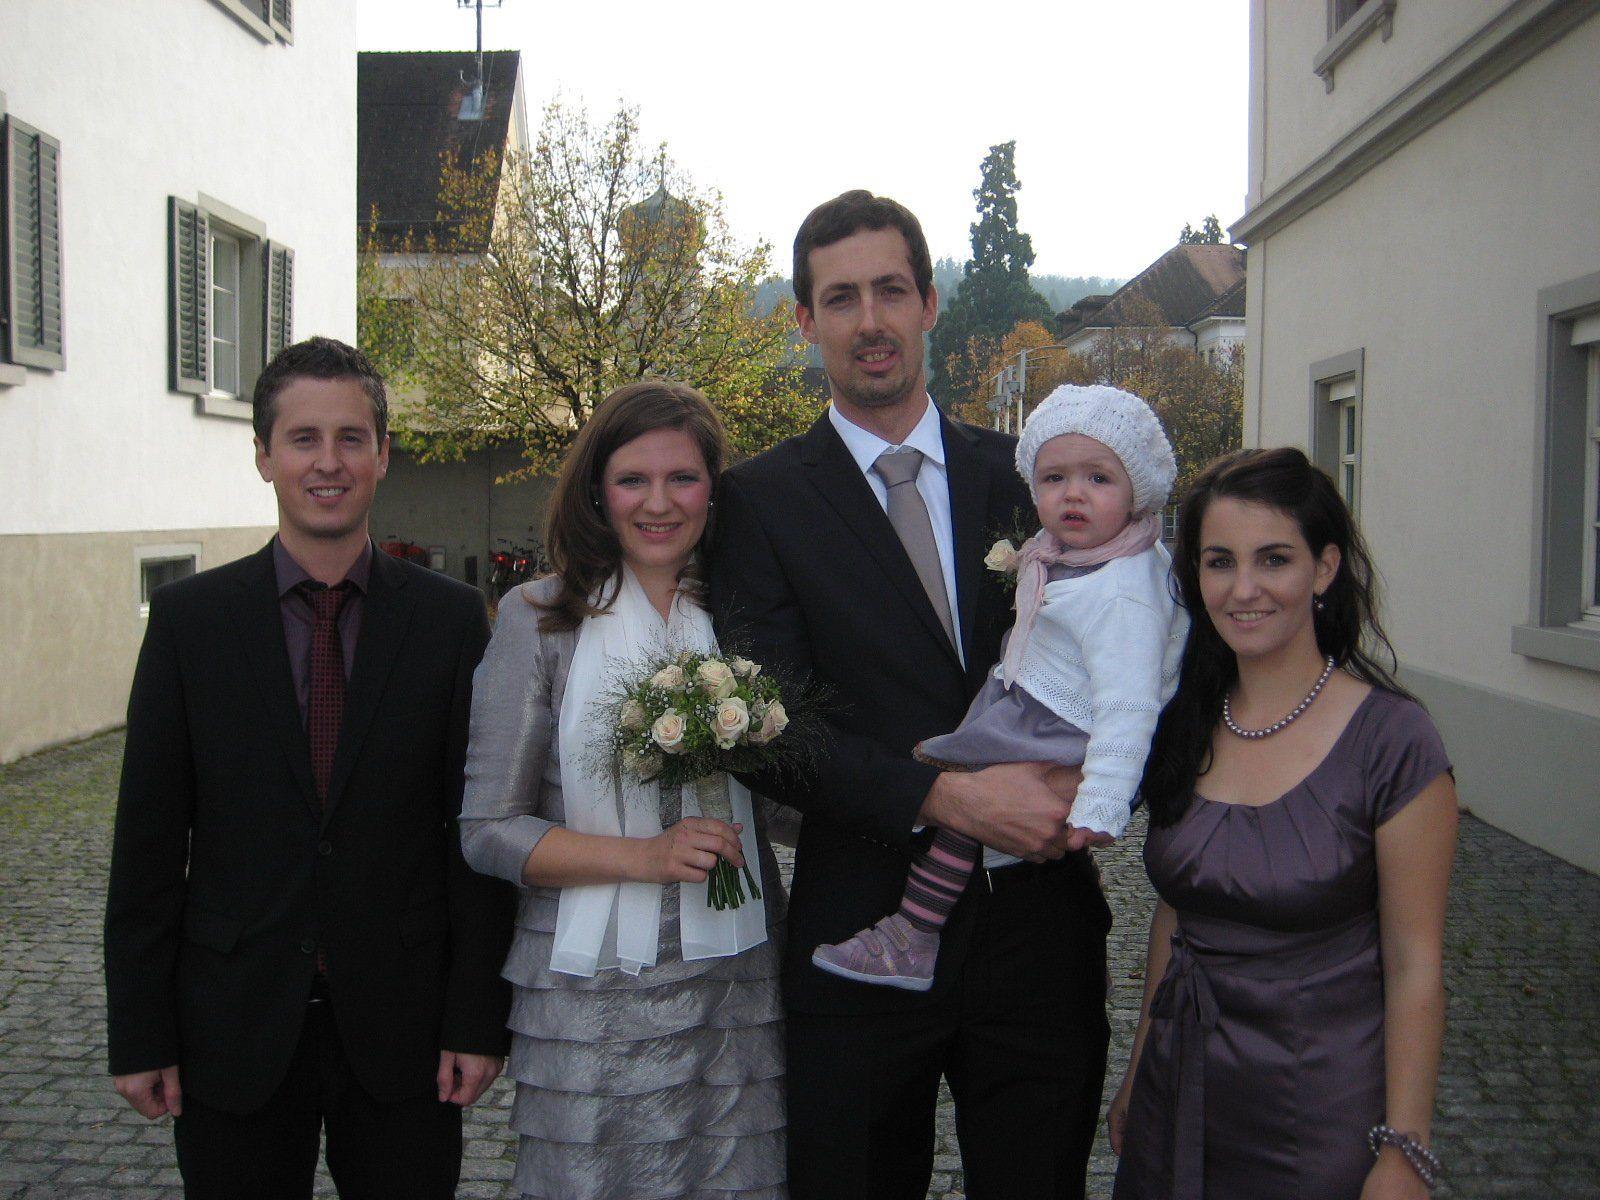 Tamara Edlinger und Jürgen Hörtnagl haben geheiratet.